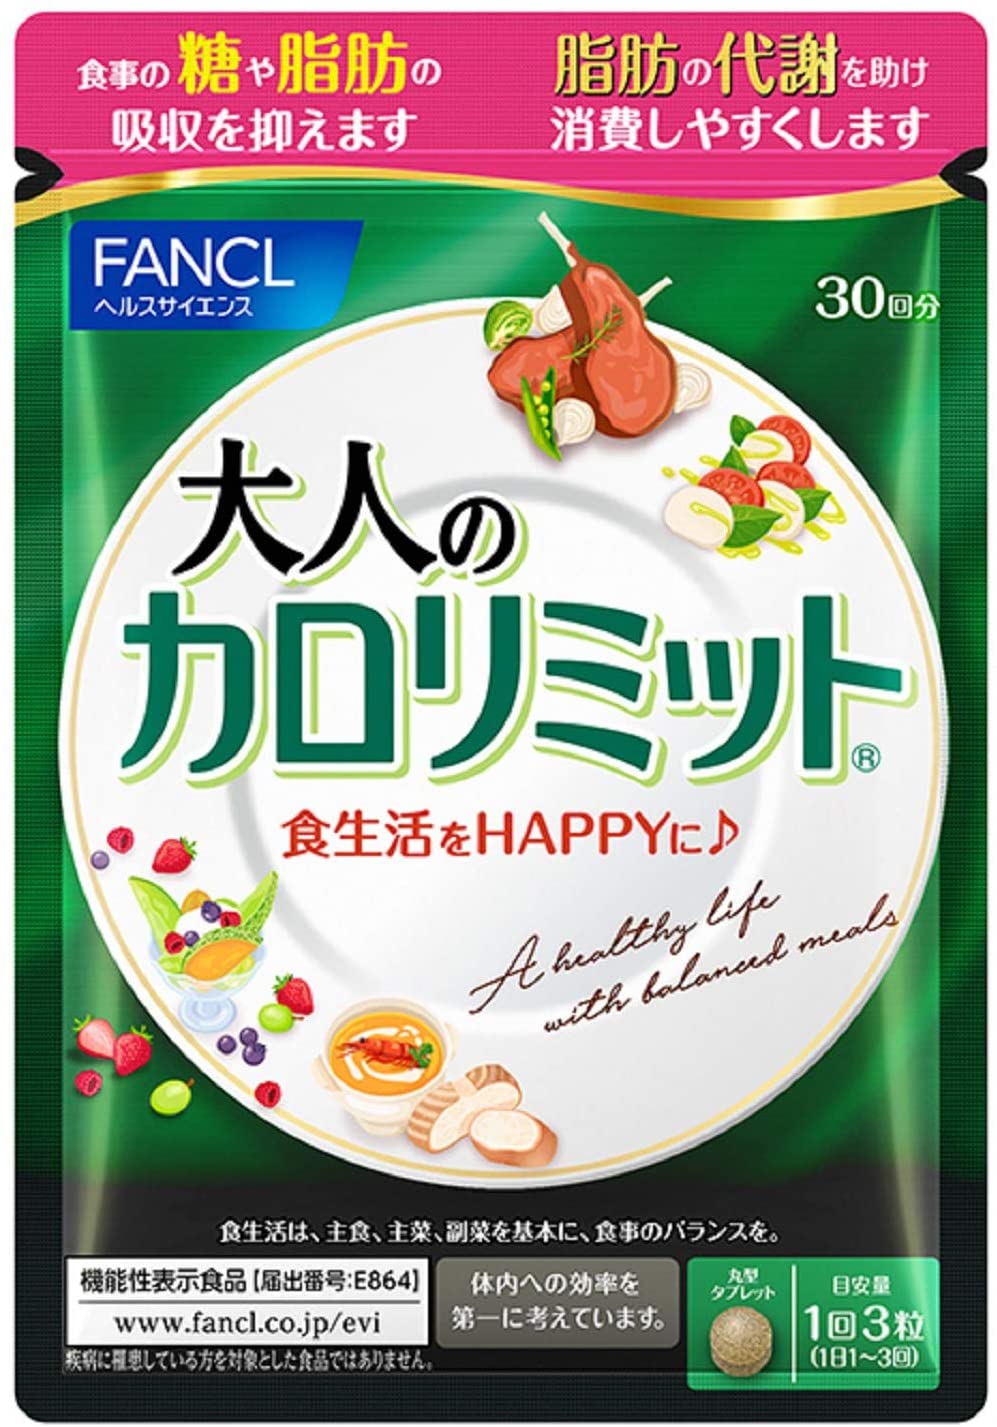 FANCLダイエット サポート サプリメント